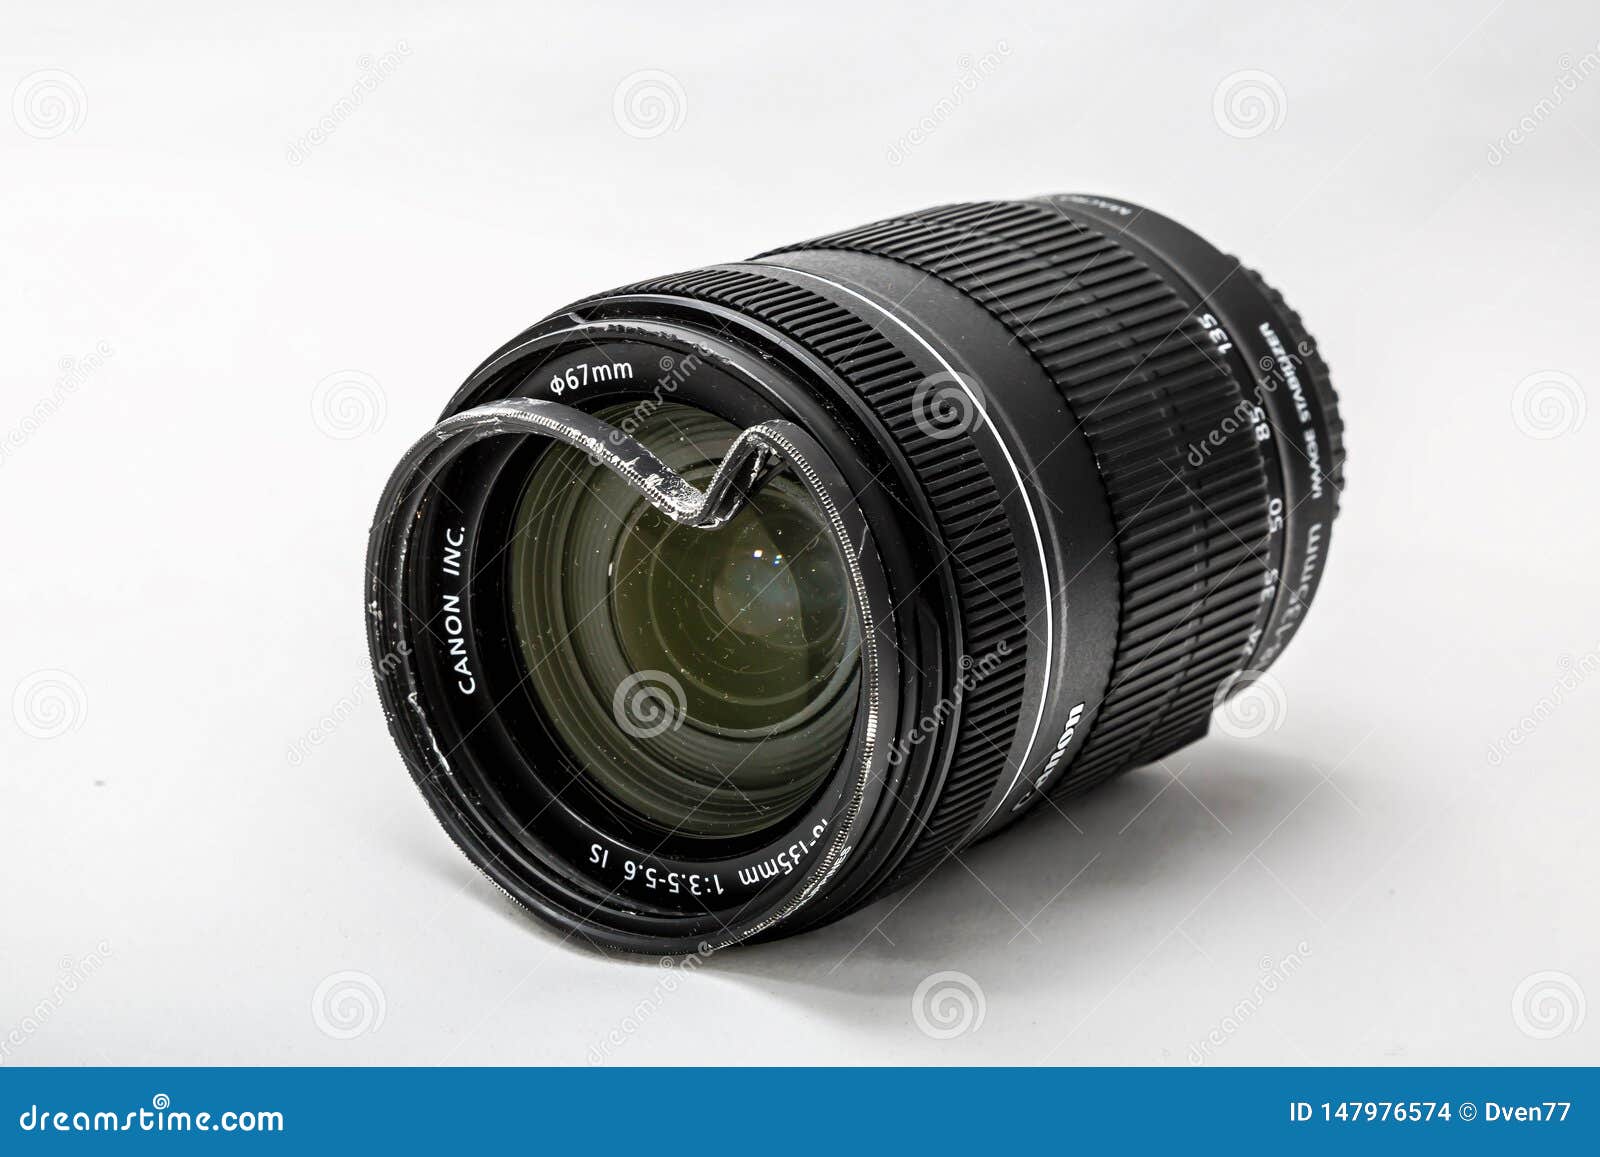 Ống kính Canon Zoom Tele Foto 18-135mm: Nếu bạn đang tìm kiếm một ống kính đa năng, phù hợp với nhiều loại chụp ảnh khác nhau, thì ống kính Canon Zoom Tele Foto 18-135mm chắc chắn là một sự lựa chọn tuyệt vời. Với khả năng zoom linh hoạt và ổn định hình ảnh, bạn sẽ có thể chụp được những bức ảnh tuyệt đẹp nhất.